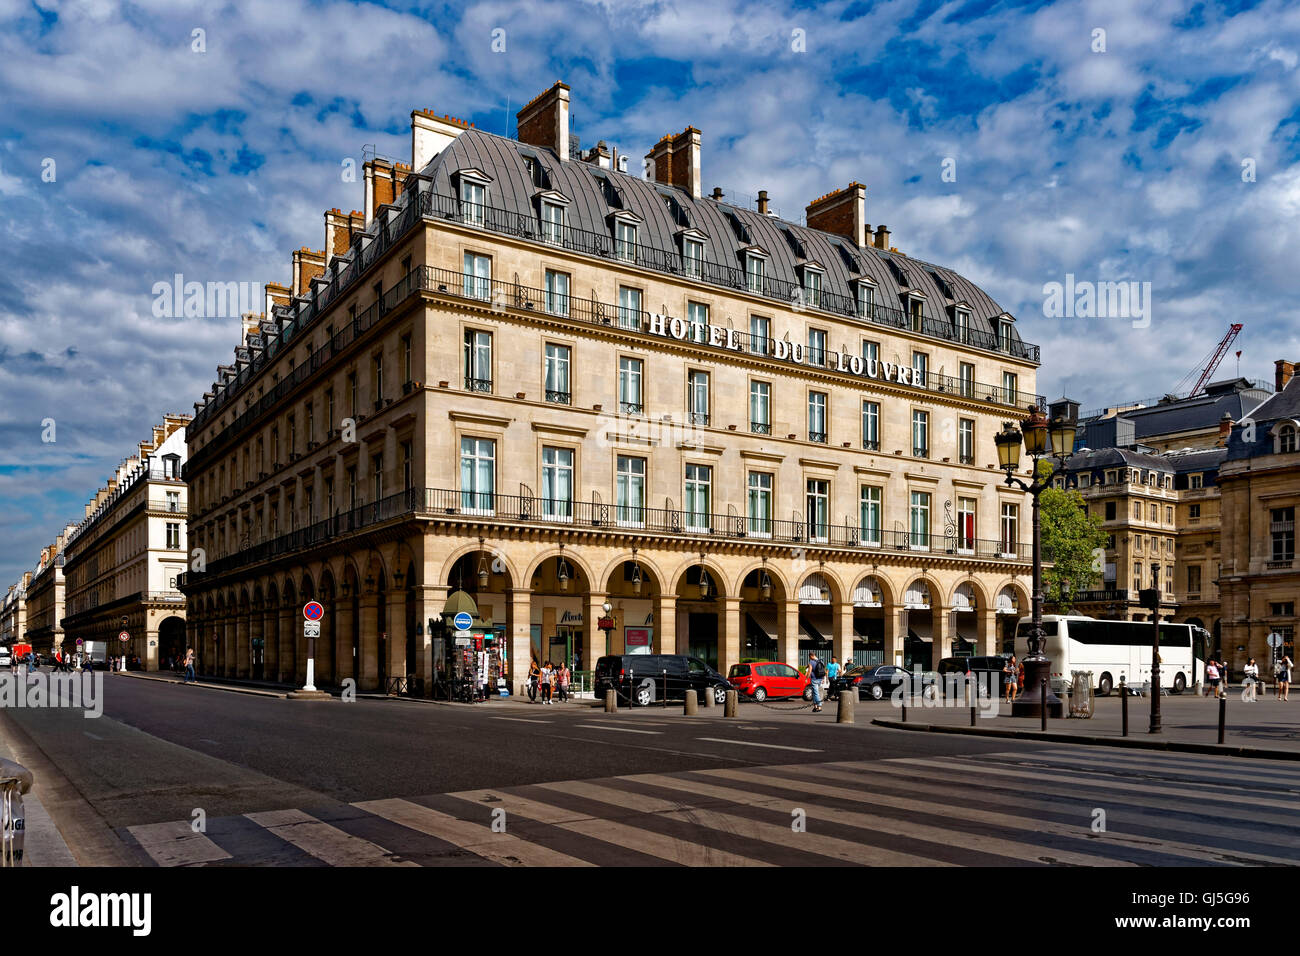 Hotel du Louvre', Paris, France Stock Photo